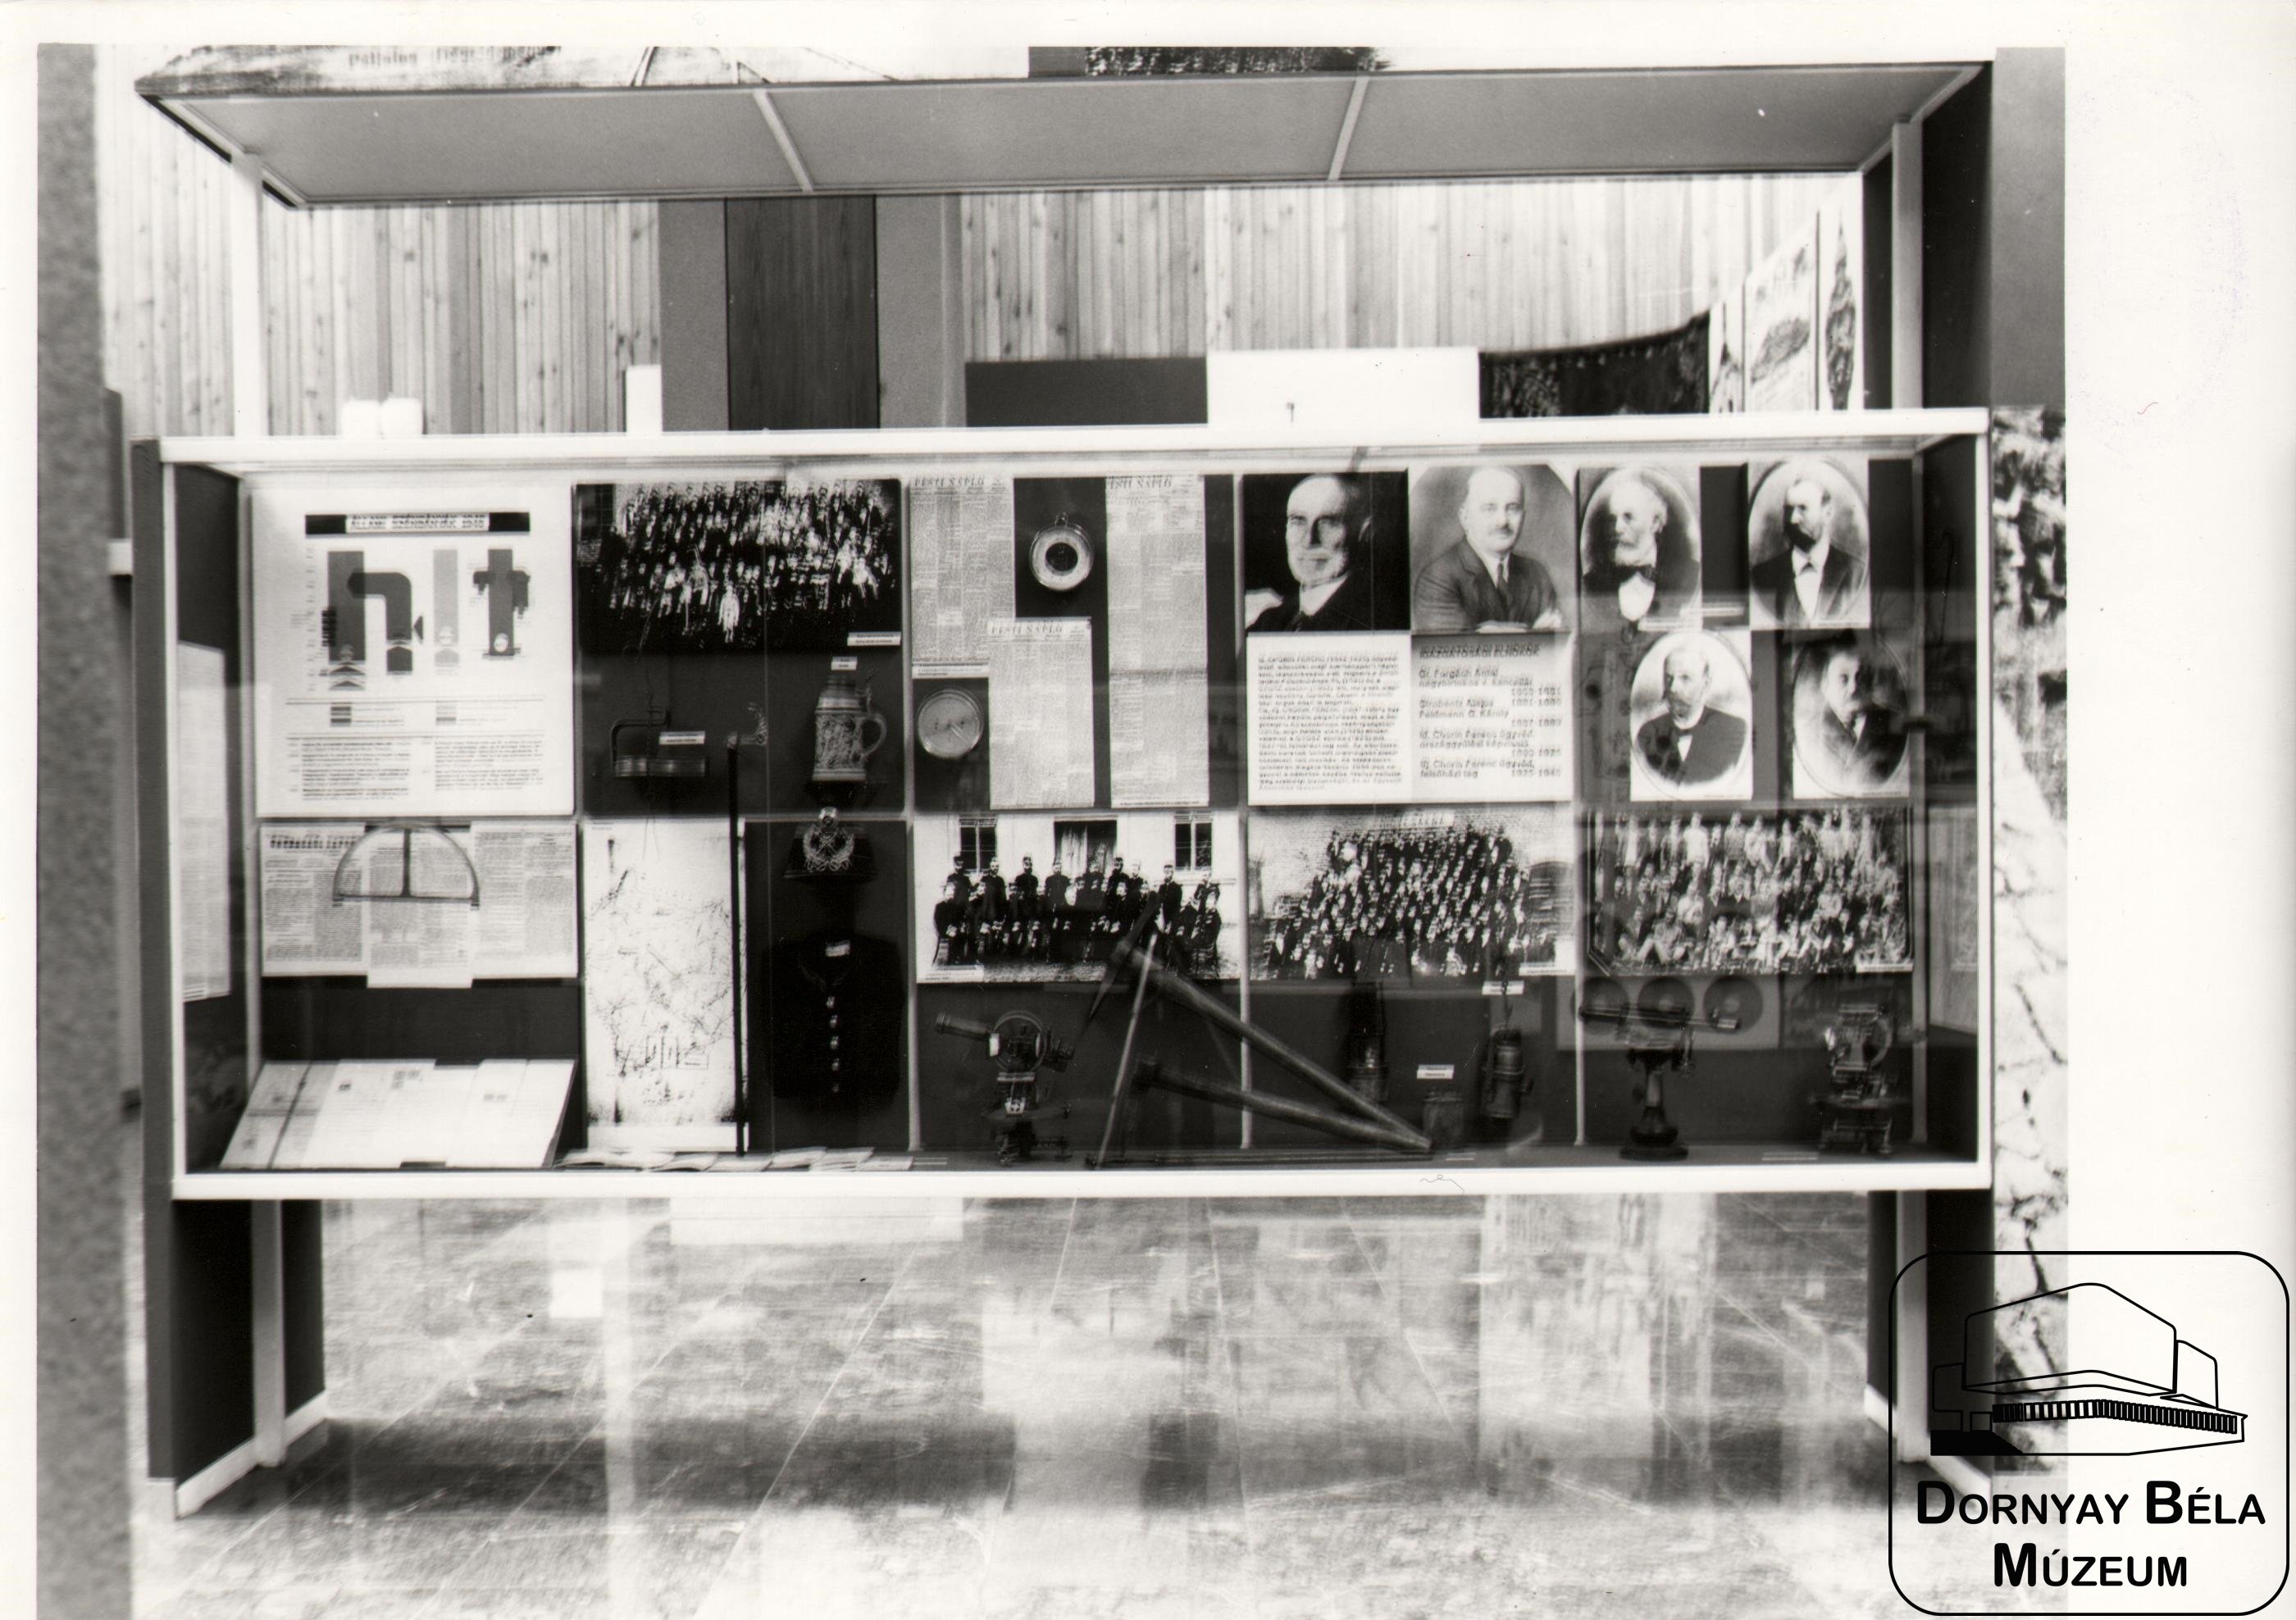 Munkásélet Nógrádban című állandó kiállítás részlete (Dornyay Béla Múzeum, Salgótarján CC BY-NC-SA)